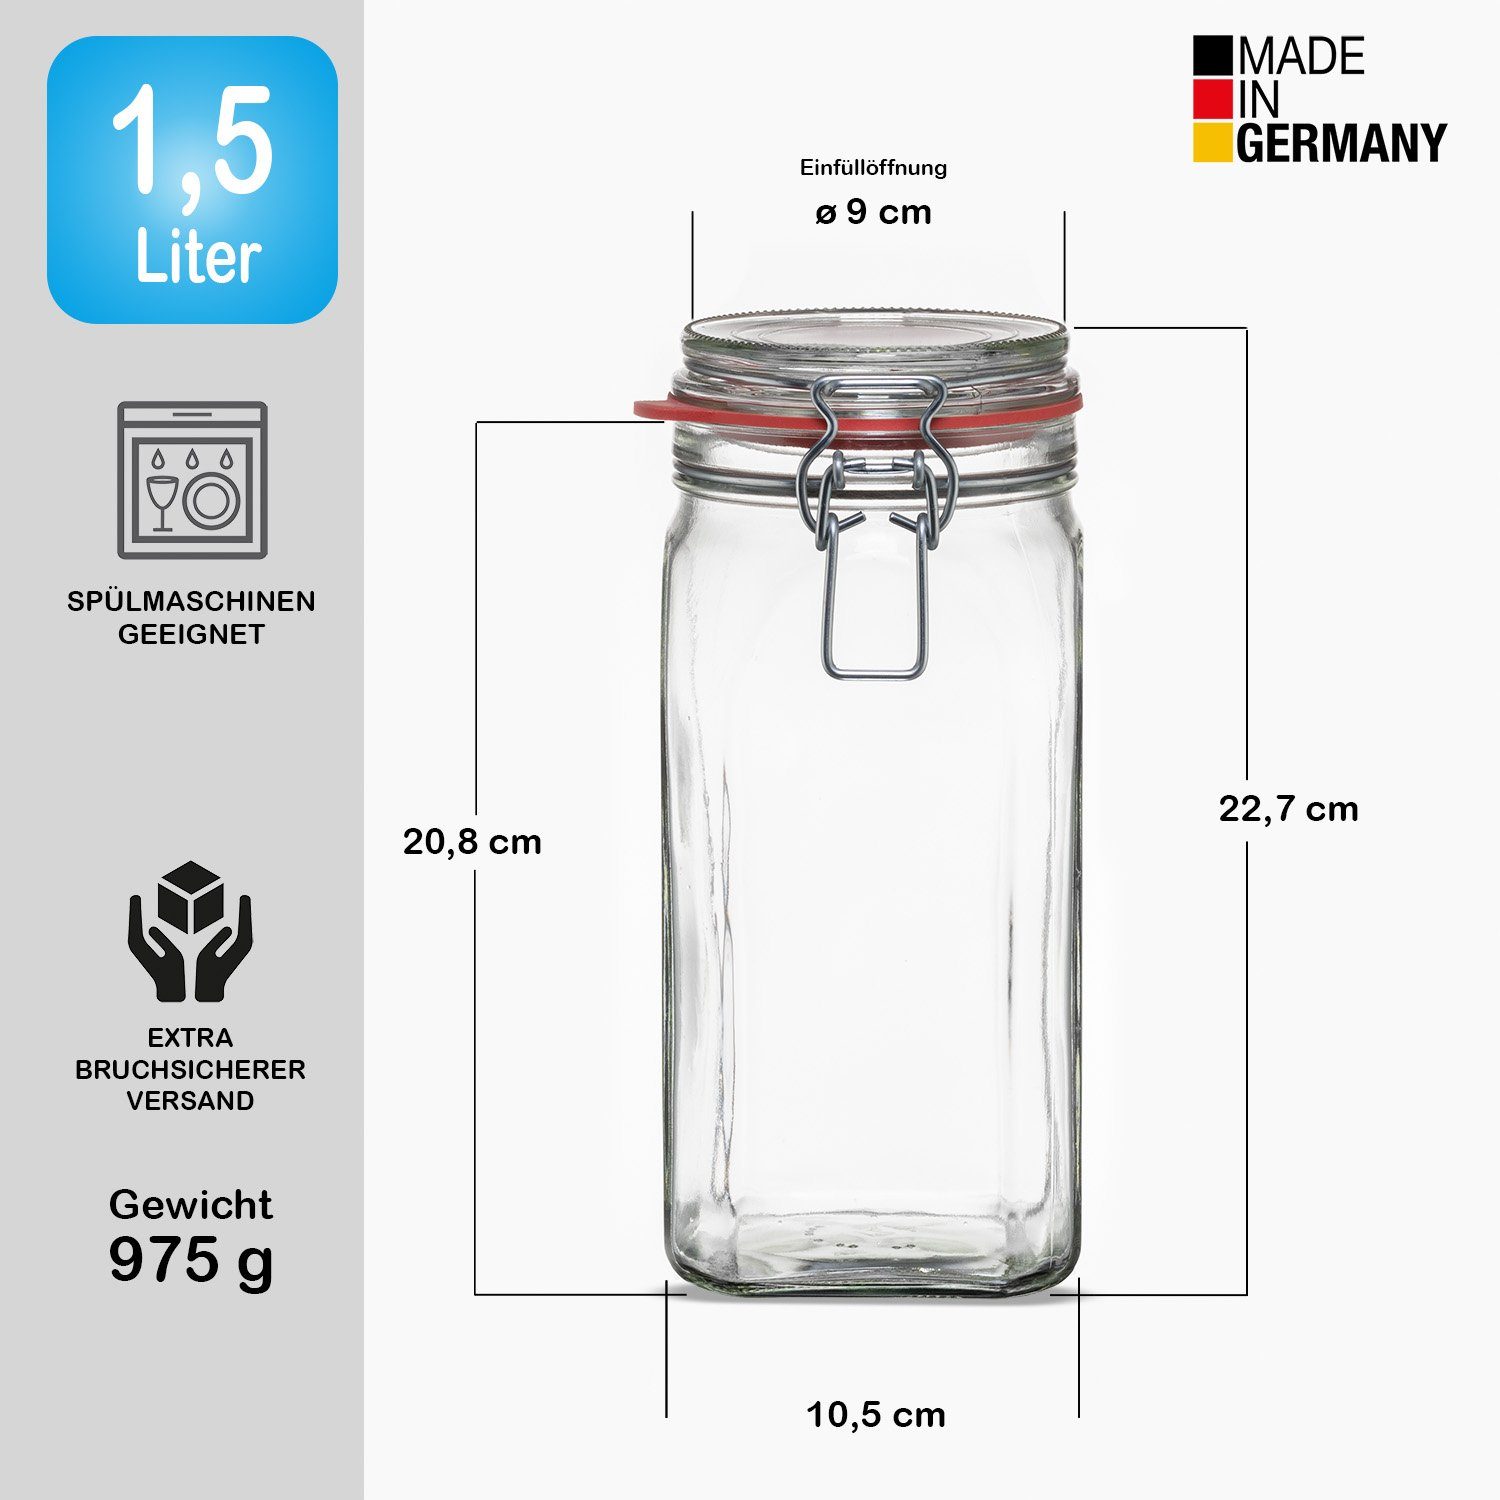 Glas. 1,5L BigDean Germany, Deckel Bügelverschluss Gummi, 12x in Metall. Made & Einmachglas Vorratsgläser (12-tlg)